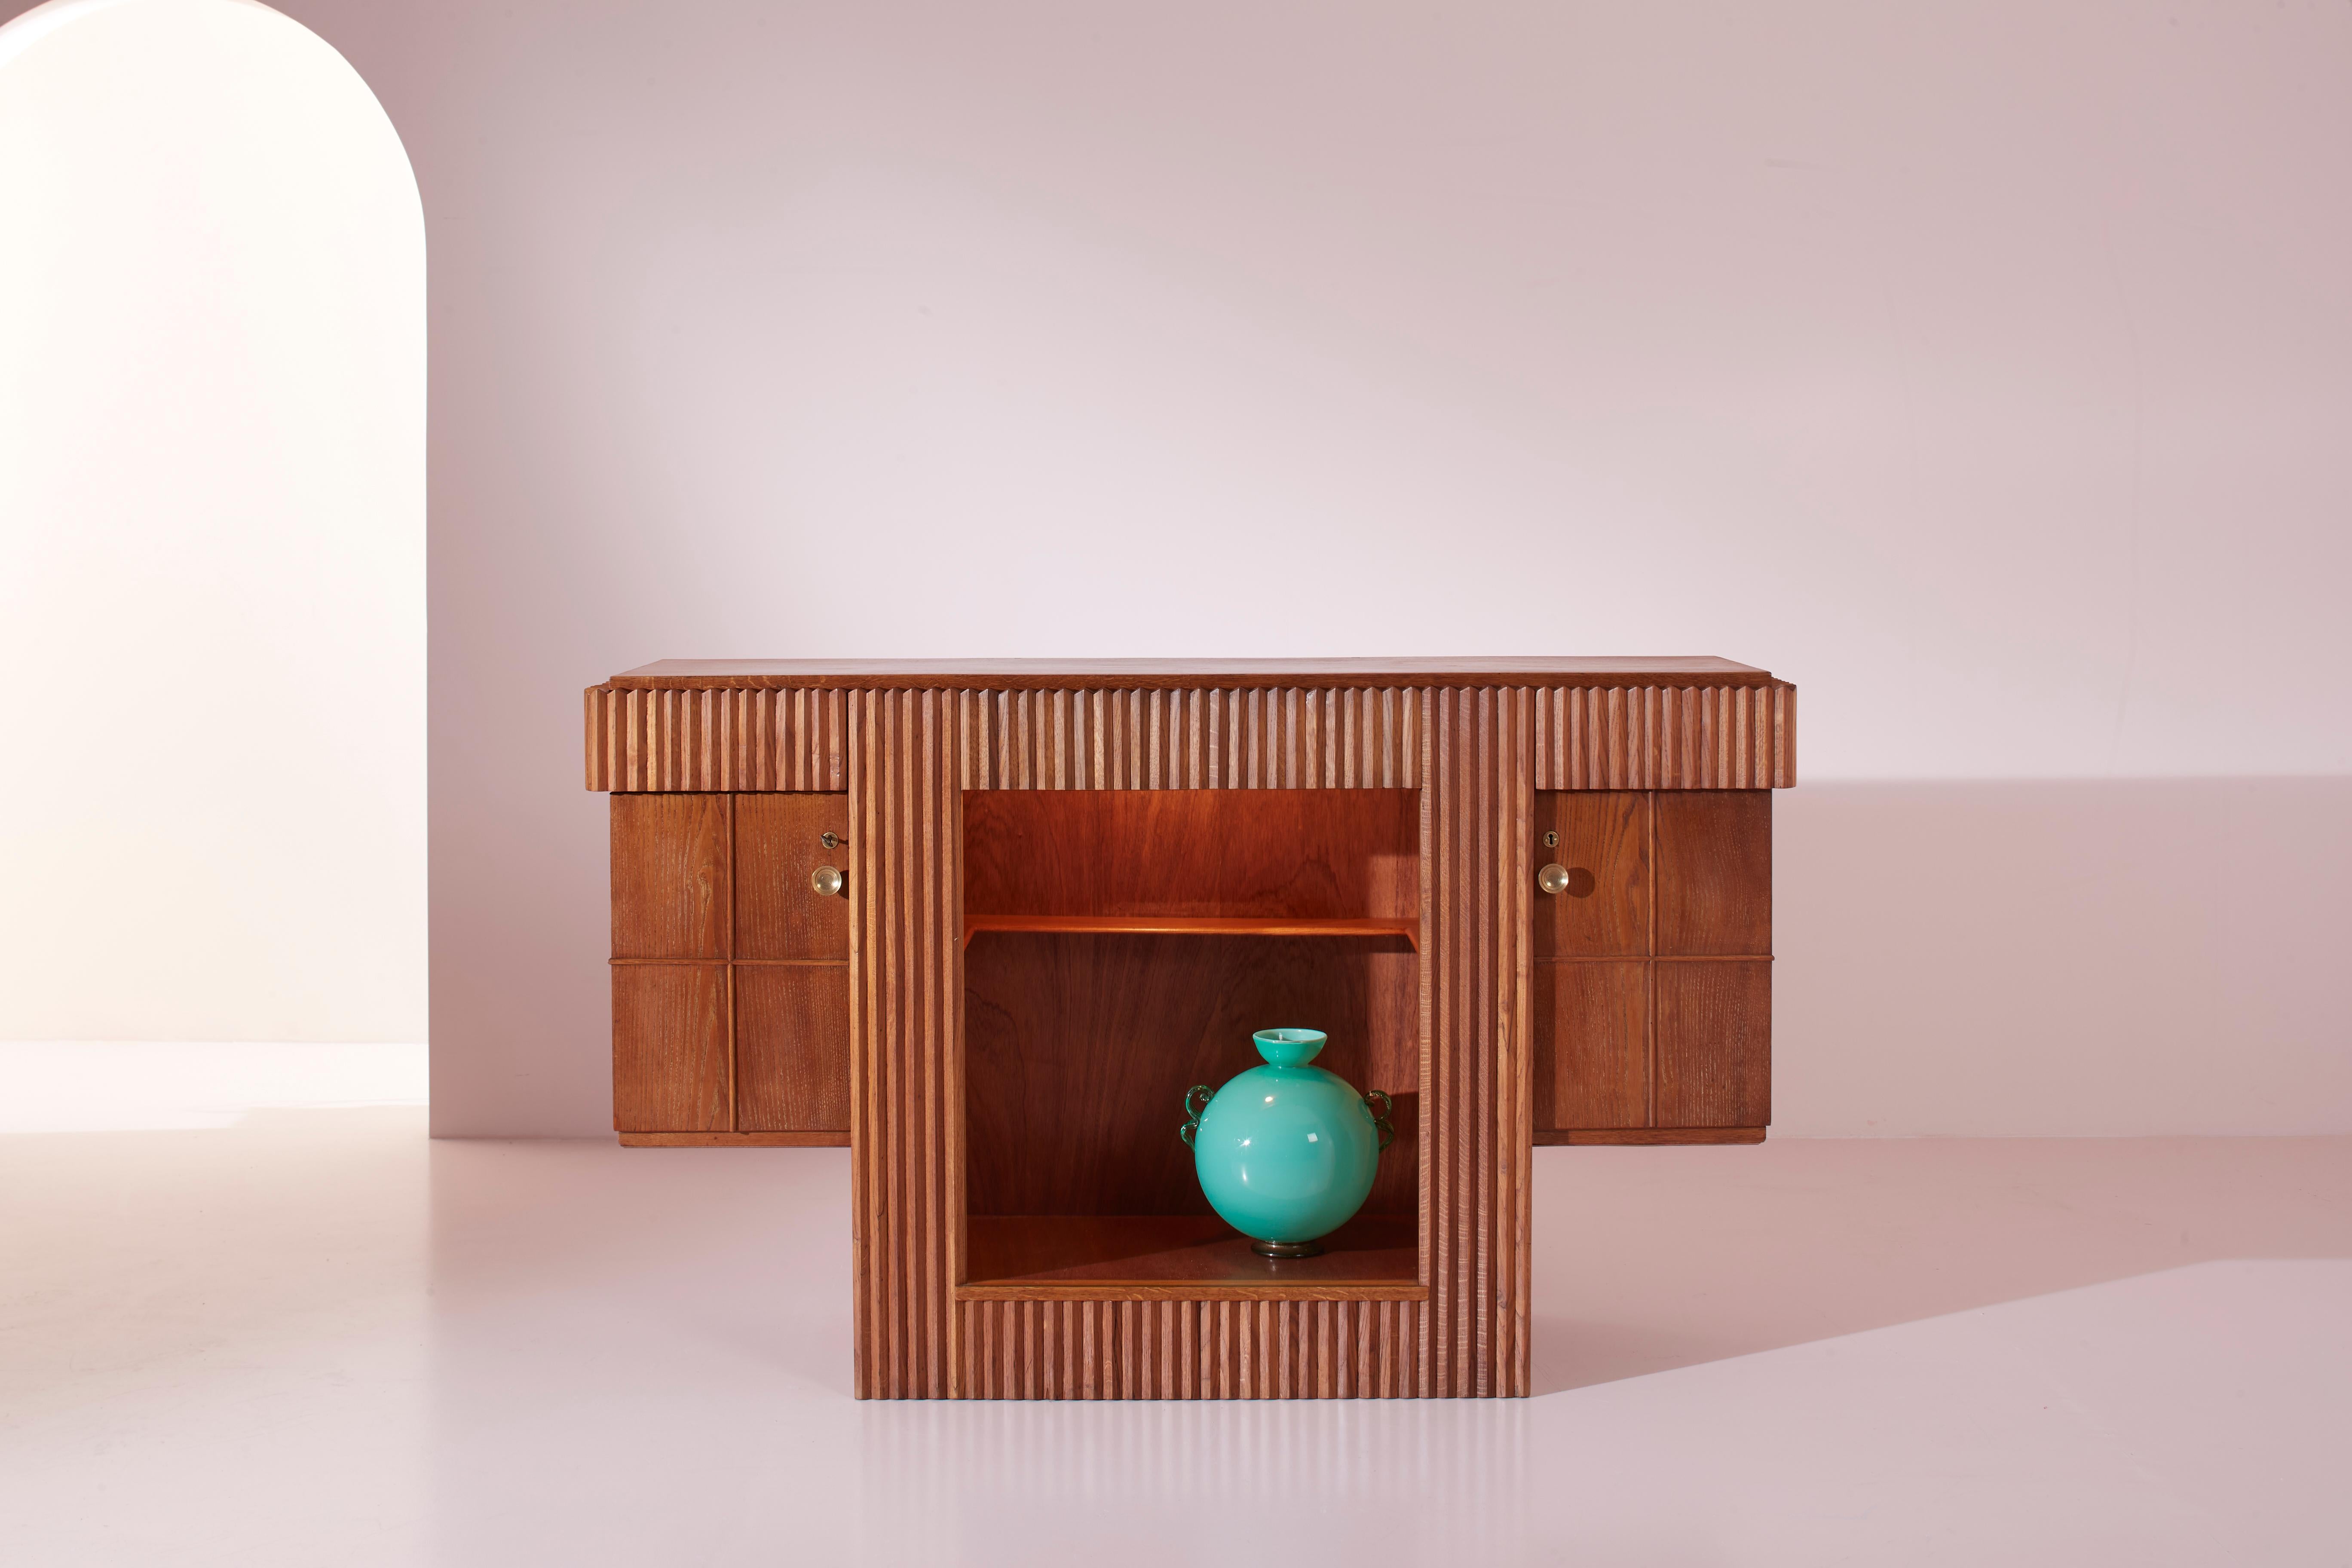 Meuble bar avec étagères et portes en bois de chêne, artisanat italien des années 1940, conçu par Gio Ponti.

Ce mobilier en chêne, parfait pour une réception ou un salon d'accueil, se distingue par sa personnalité et devient immédiatement le point